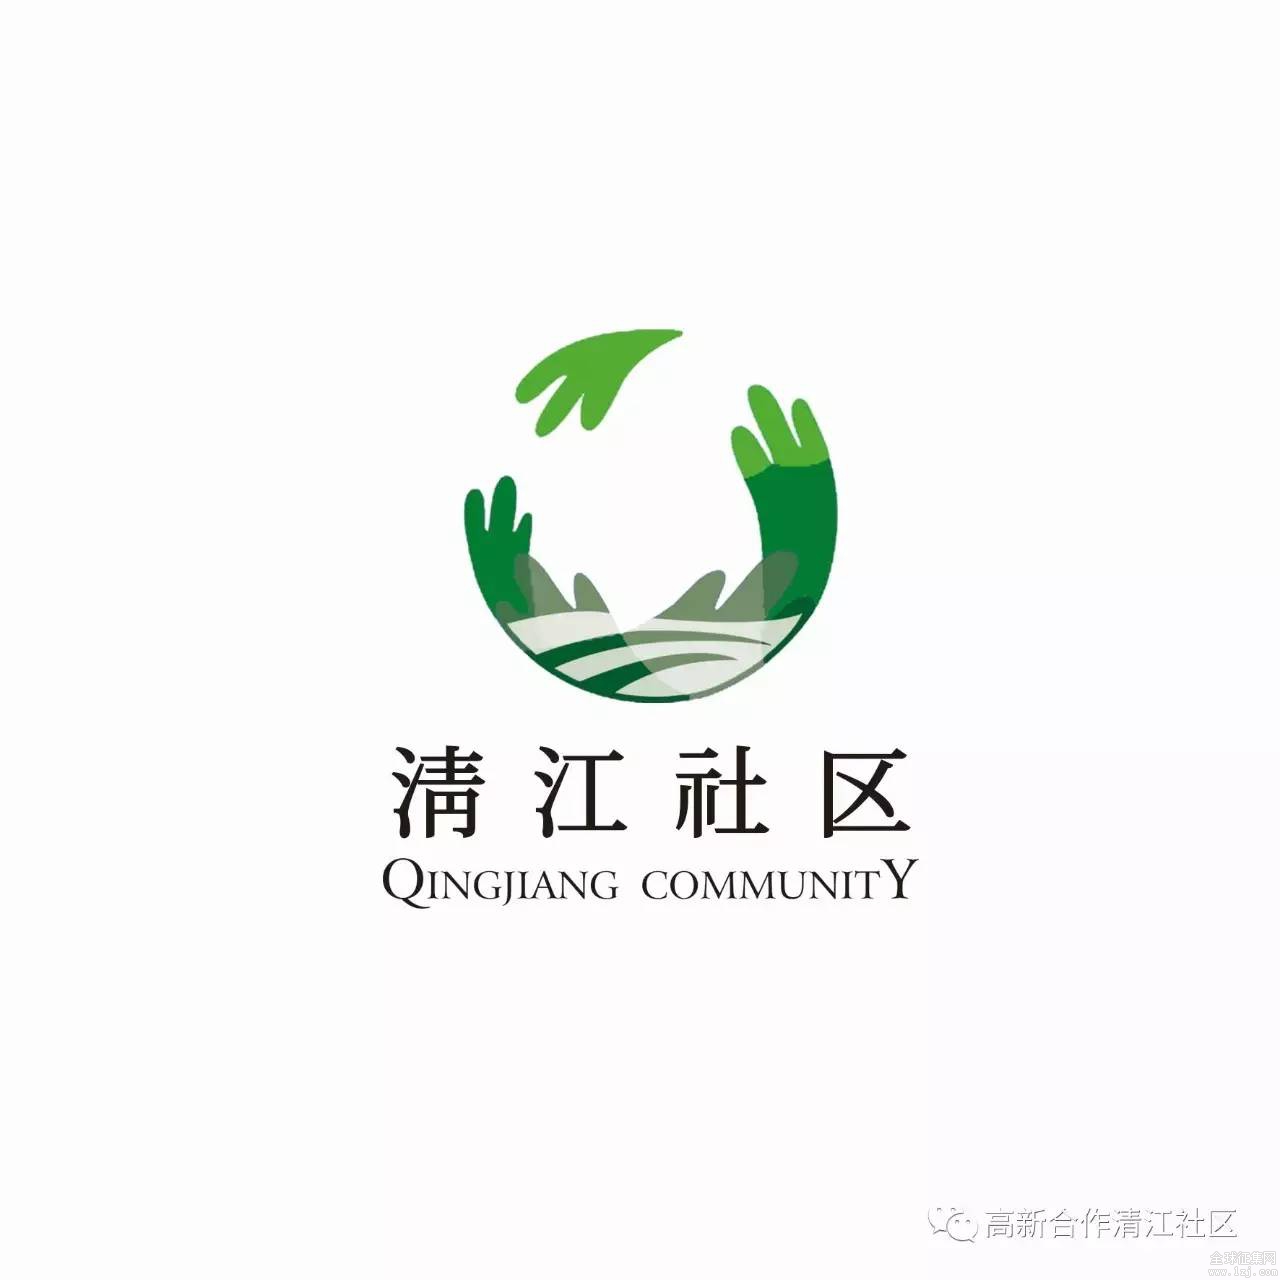 清江社区logo征集及评选活动